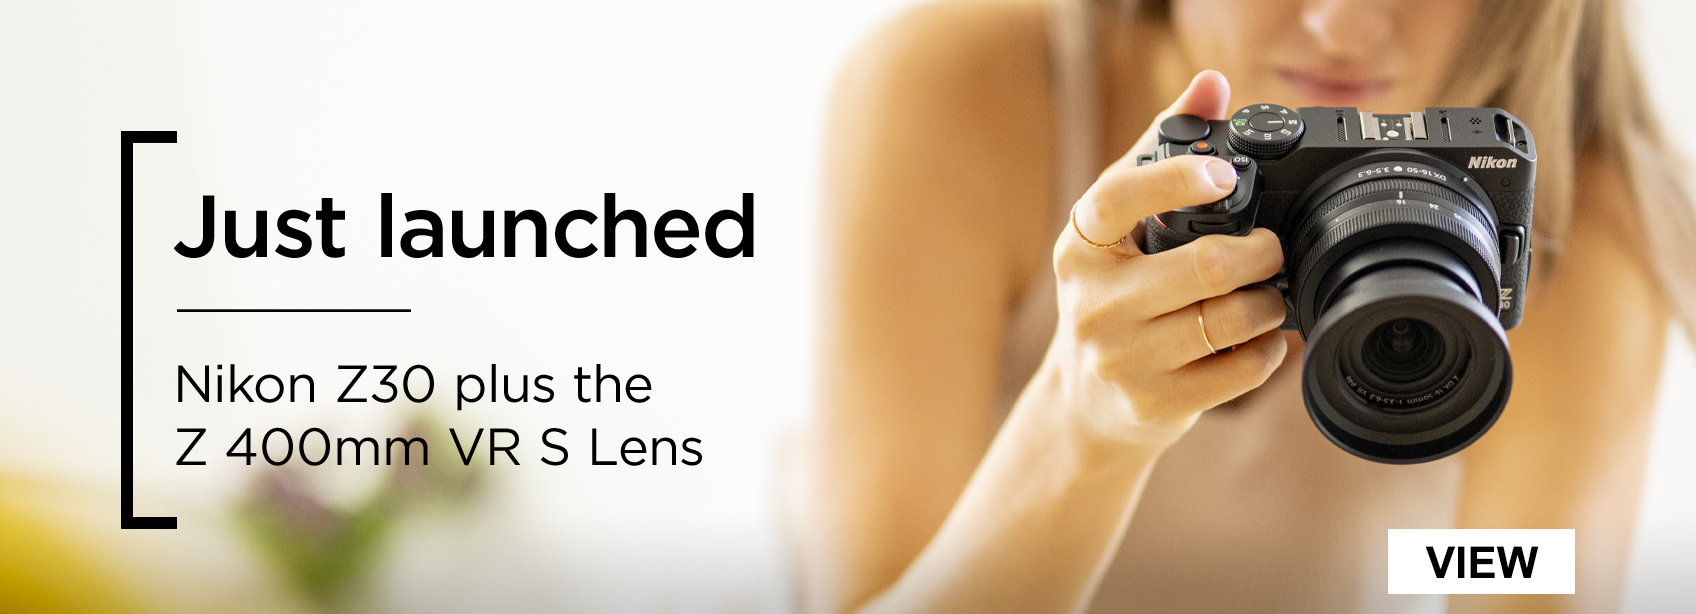 Just launched - Nikon Z30 plus the Z 400m VR S Lens